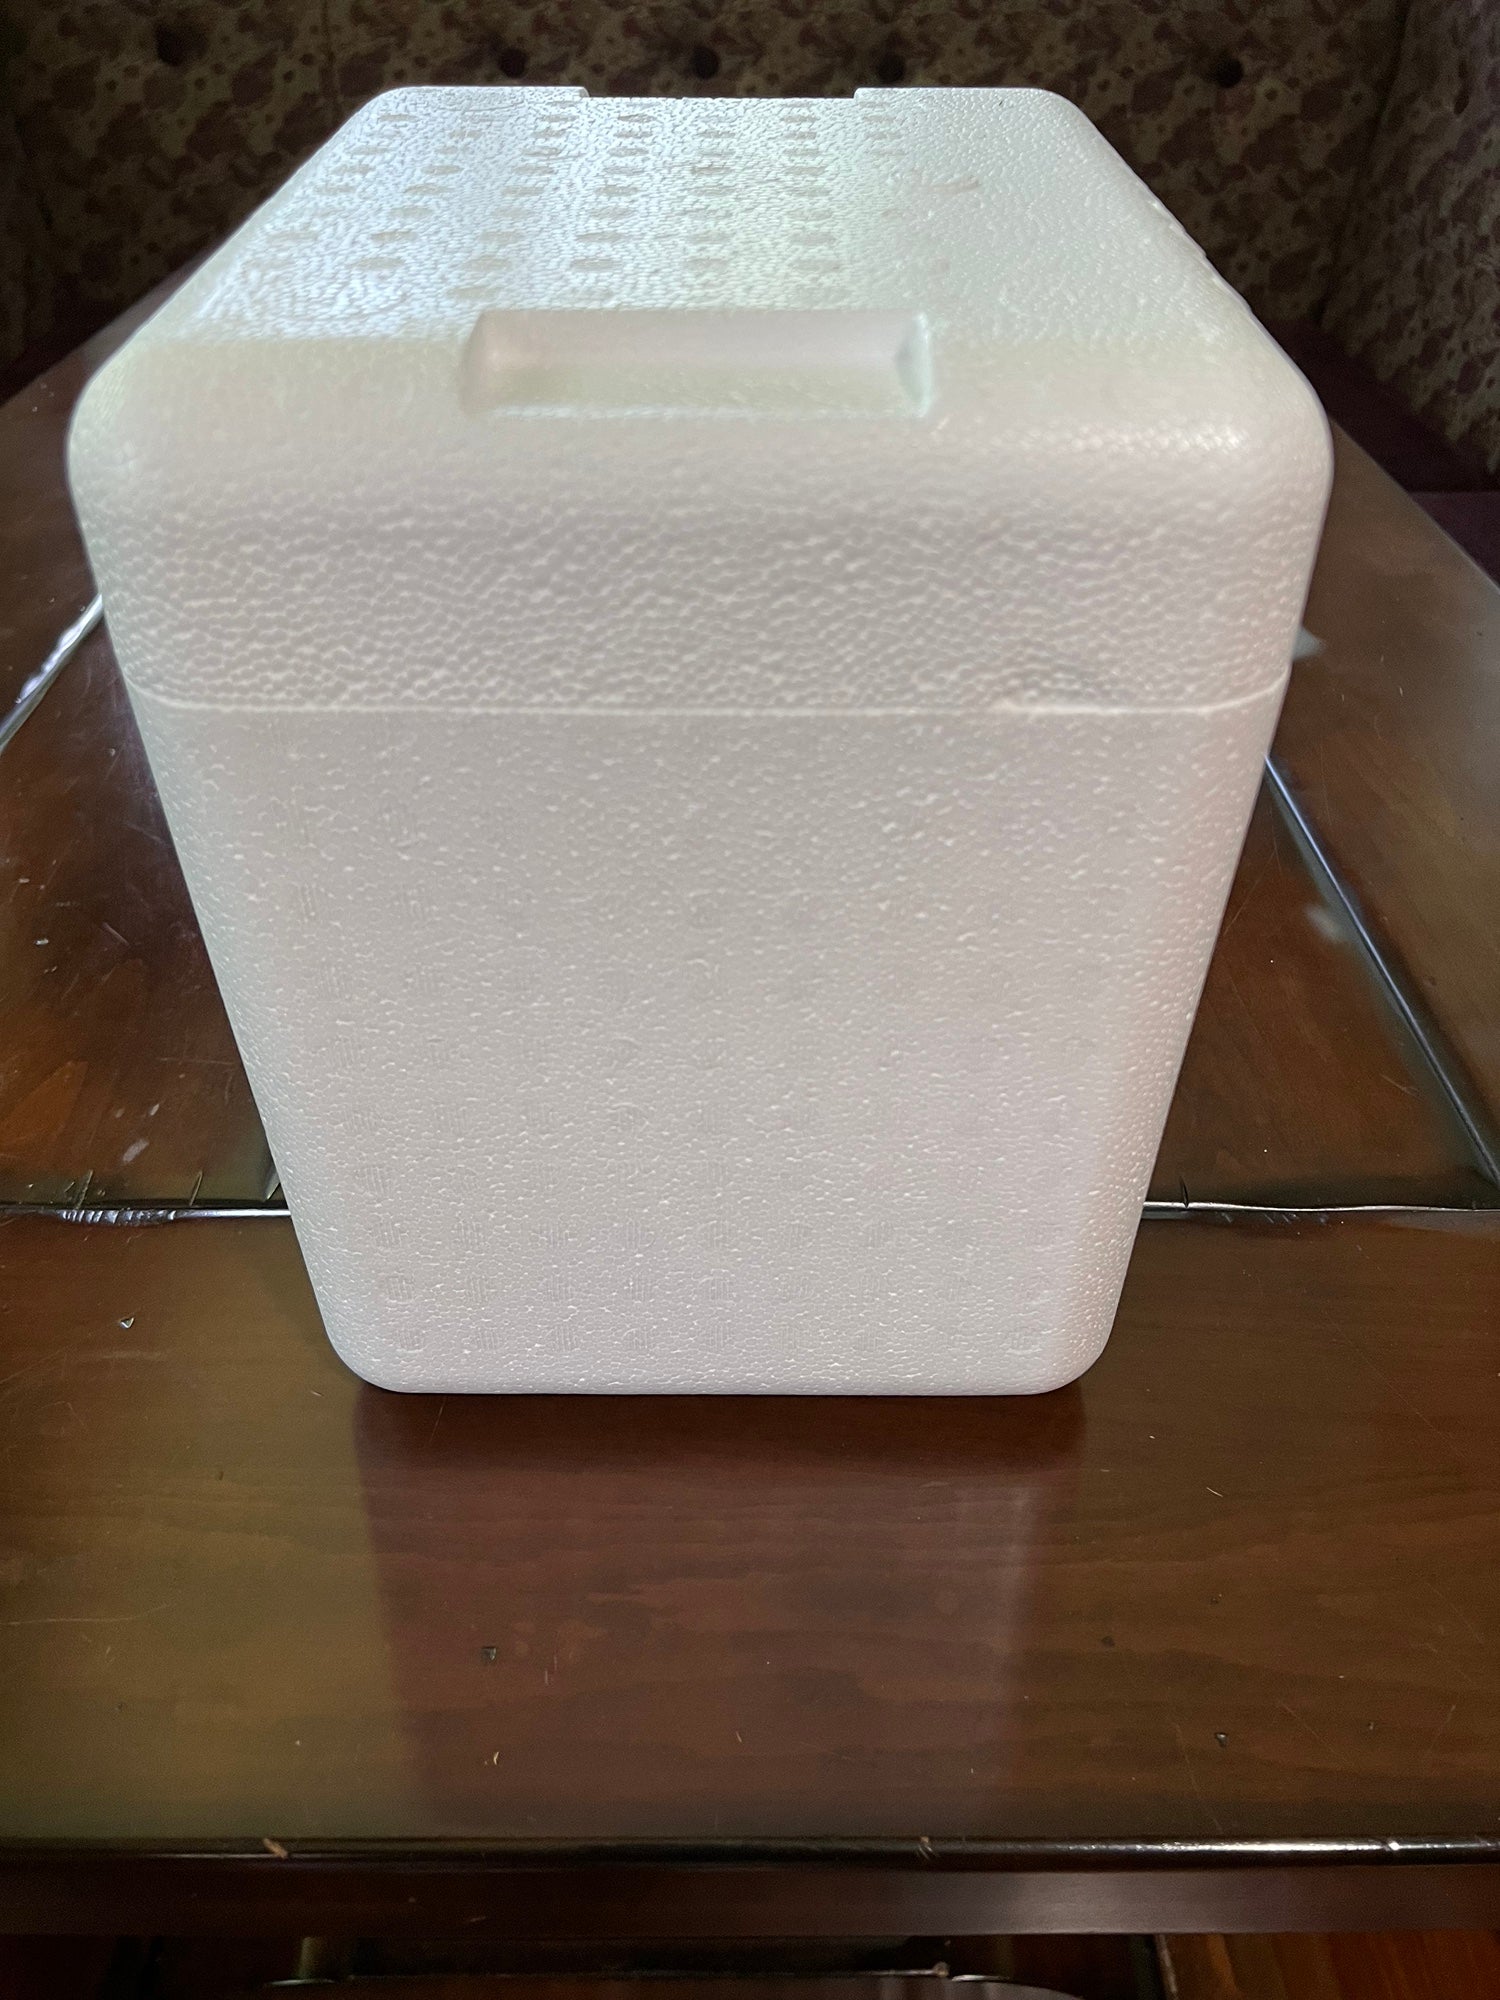 New Styrofoam Cooler